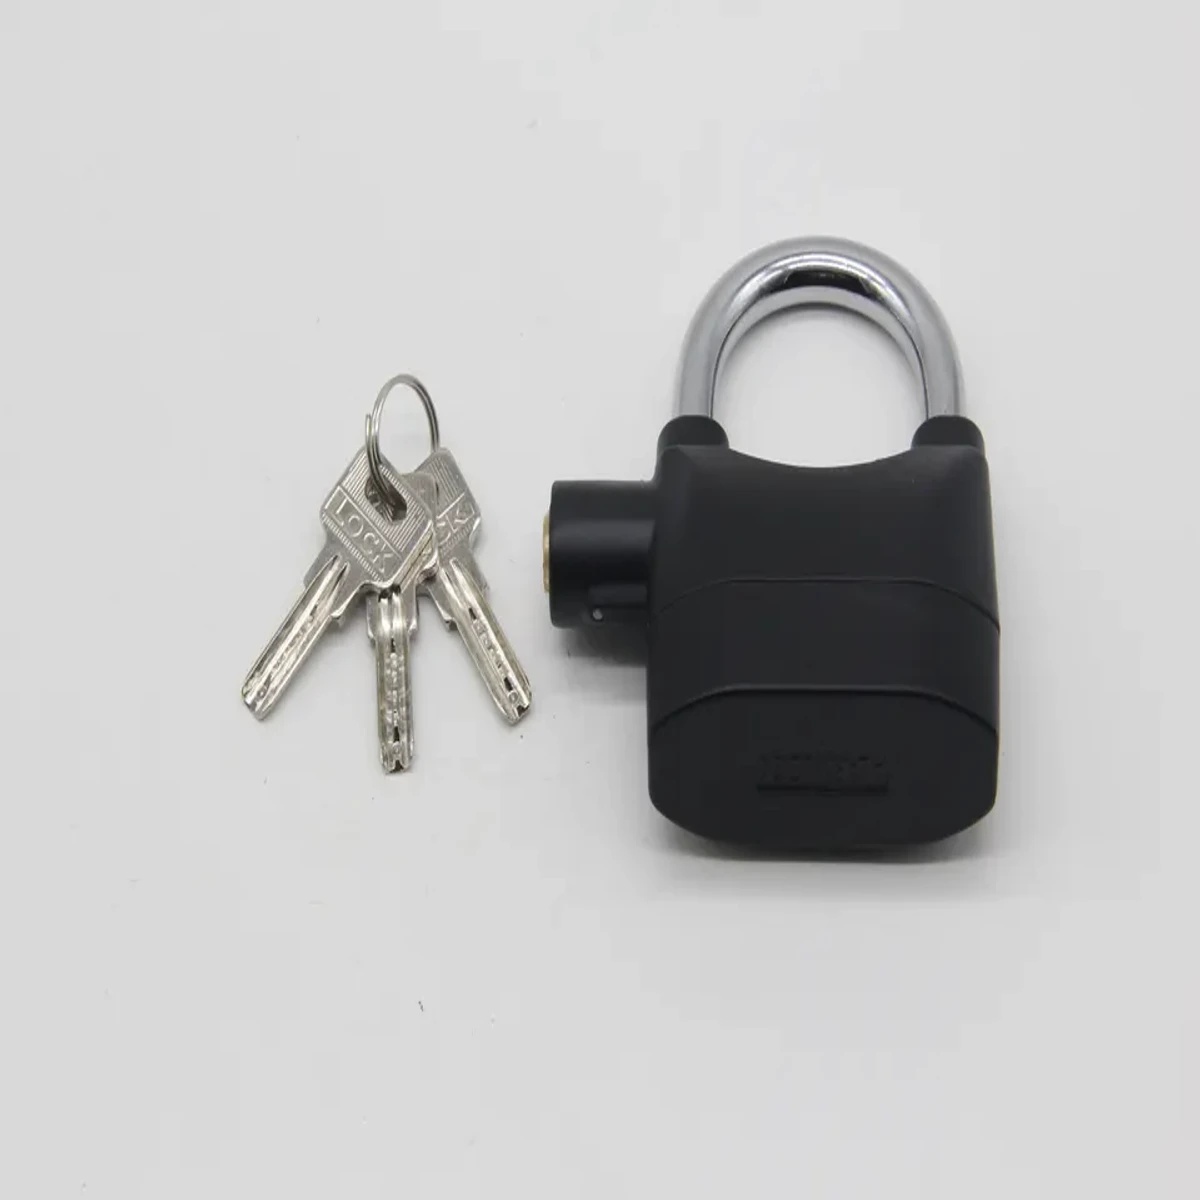 Security Alarm Lock for Bike and Door - Black